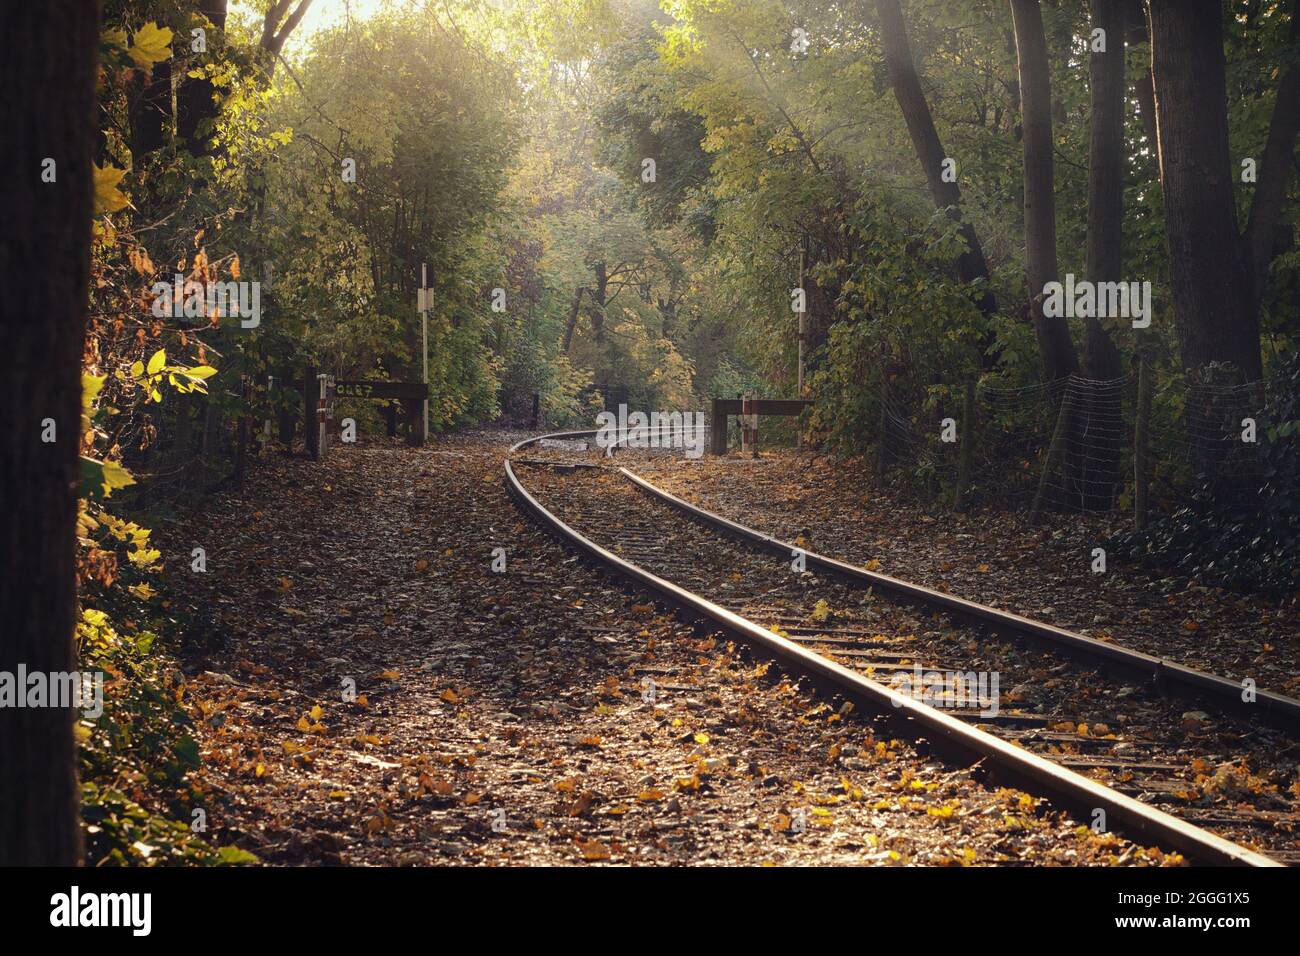 voies ferrées à travers une bocage dans l'ambiance d'automne et l'incidence de la lumière. forêt décidue dans de belles couleurs d'automne Banque D'Images